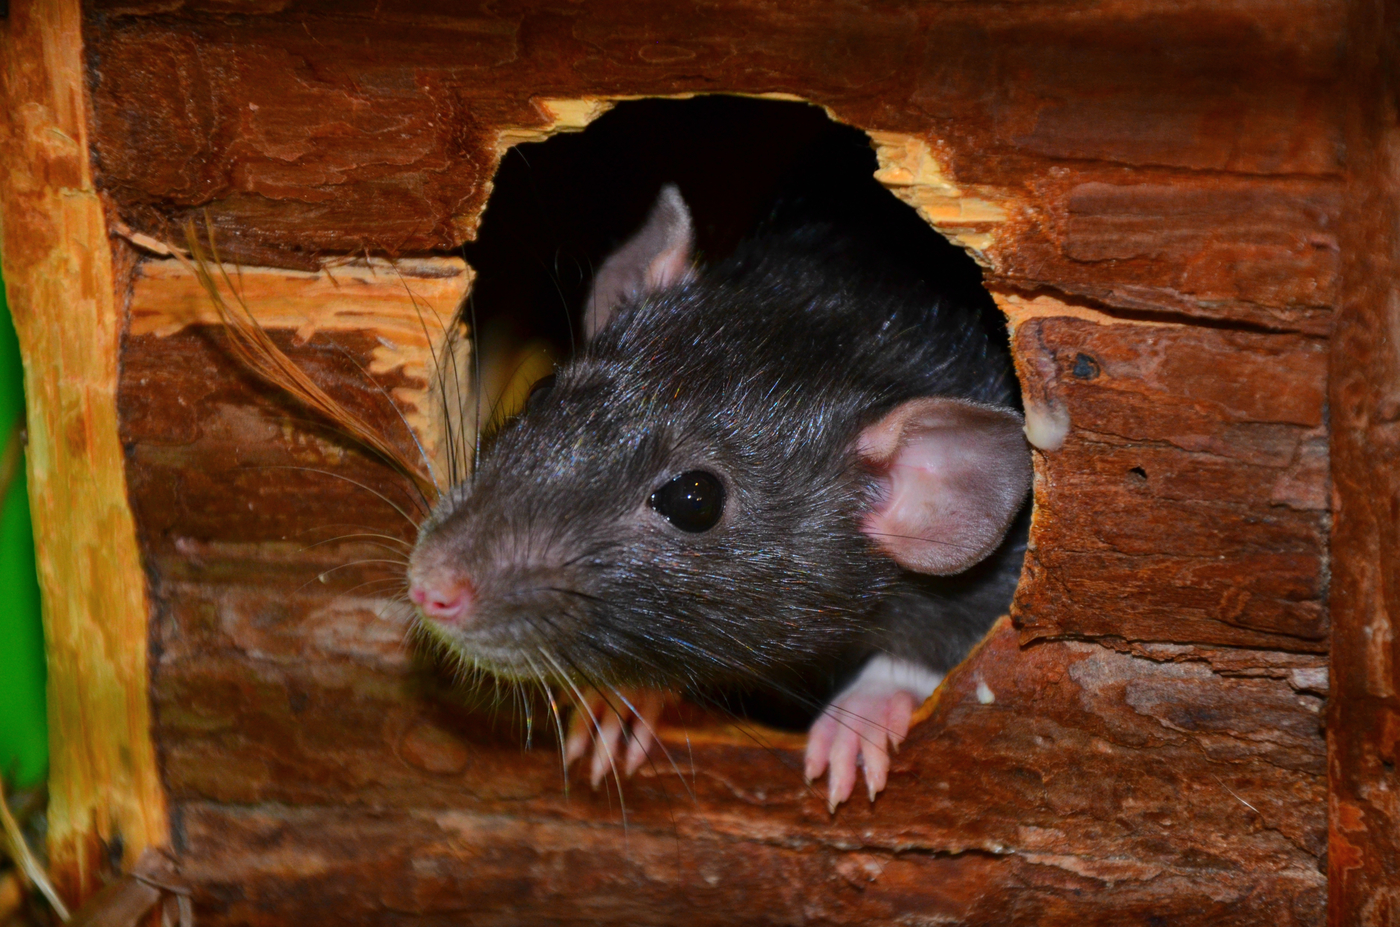 Как избавиться от крыс в частном доме, курятнике, квартире и других помещениях - применение различных методов, чтобы вывести грызунов